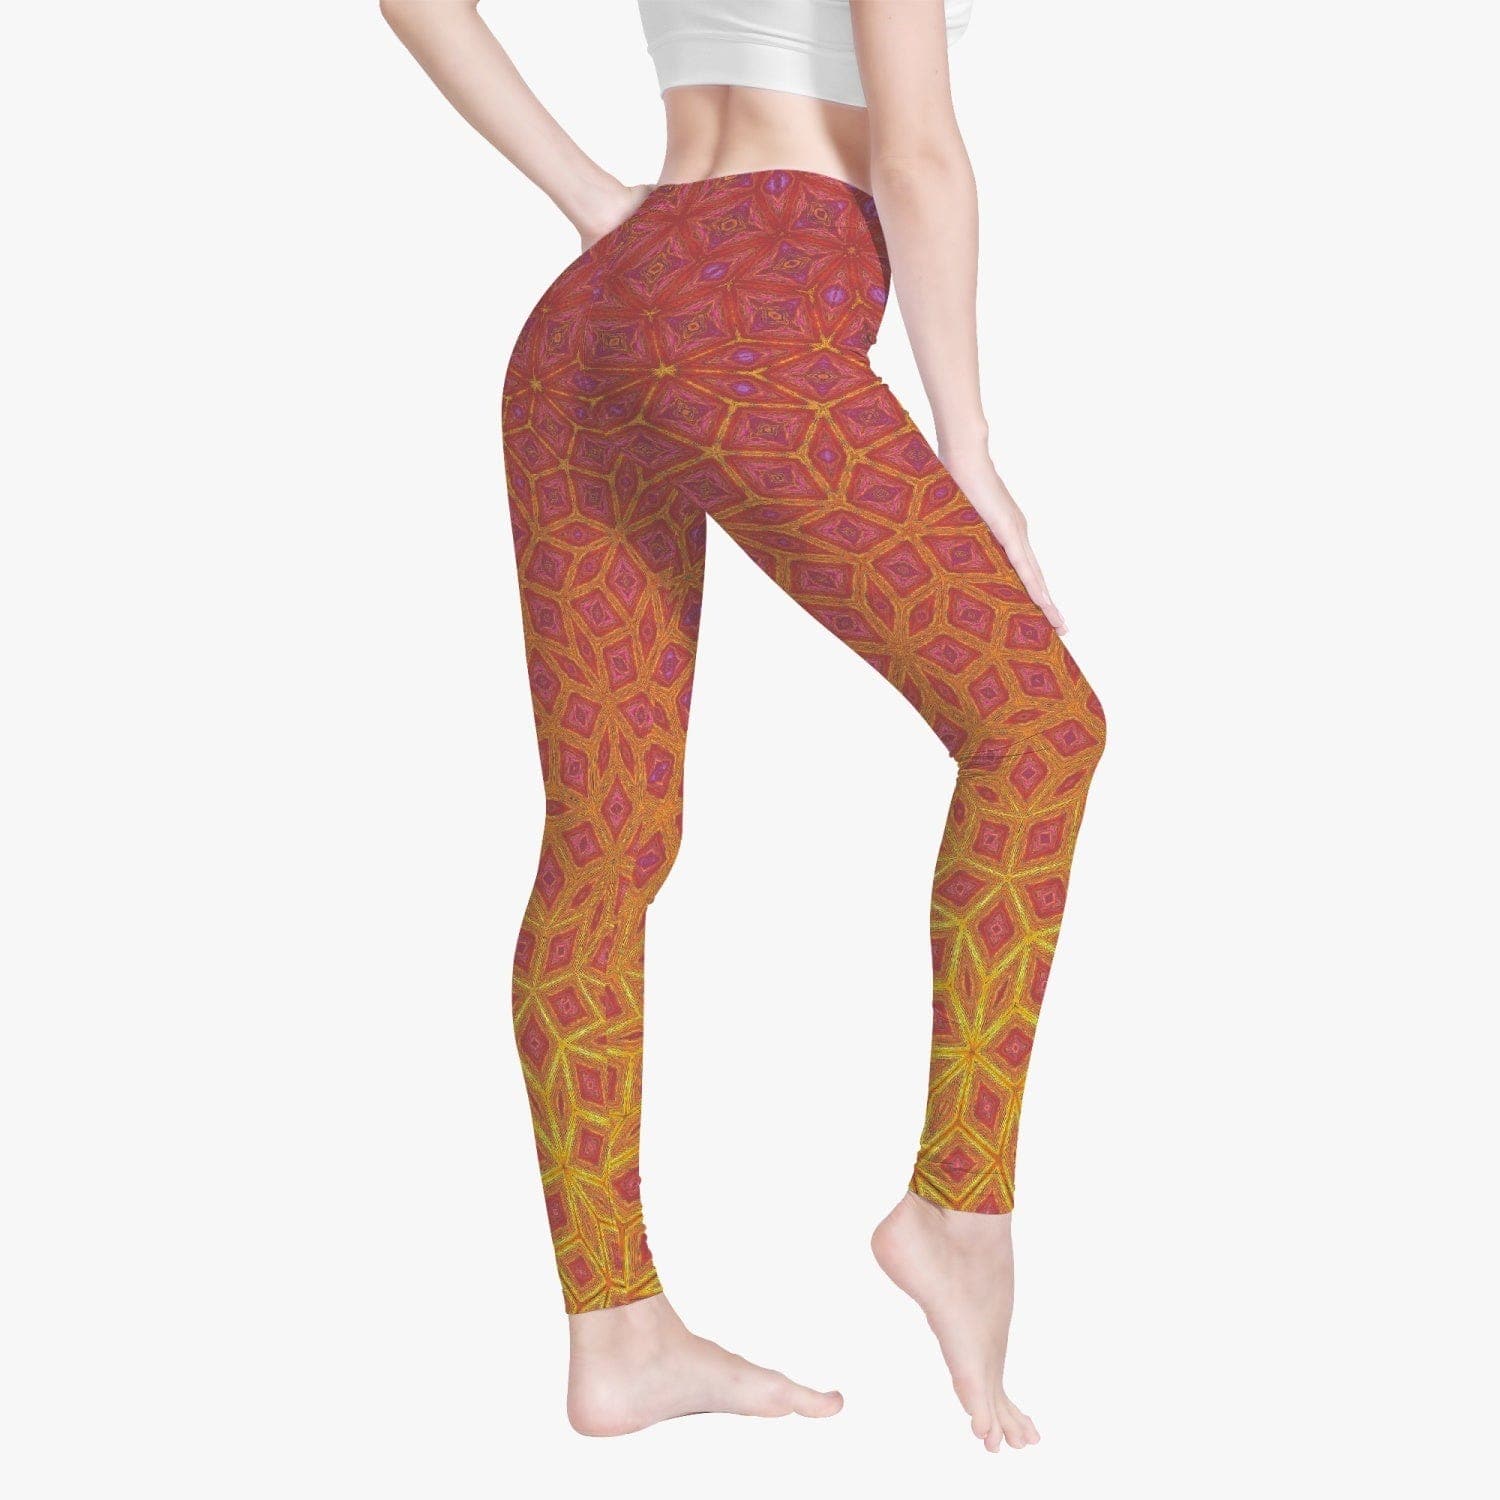 Winter dawn. Yoga Pants/leggings by Sensus Studio Design